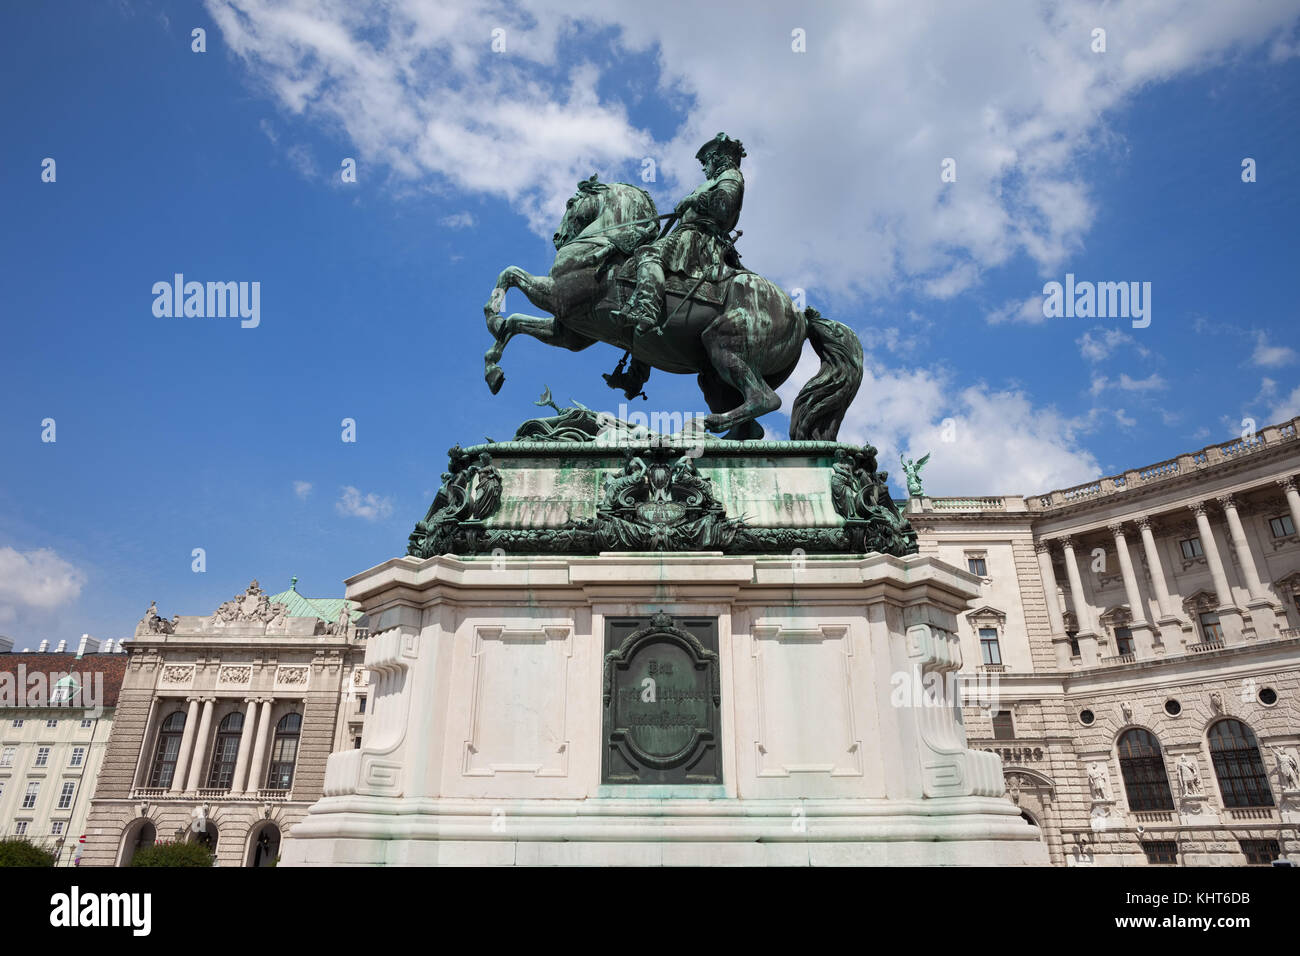 Statua equestre del principe Eugenio di Savoia da Anton dominick Ritter von fernkorn (1865), Heldenplatz (Piazza degli Eroi), la città di Vienna, Austria Foto Stock